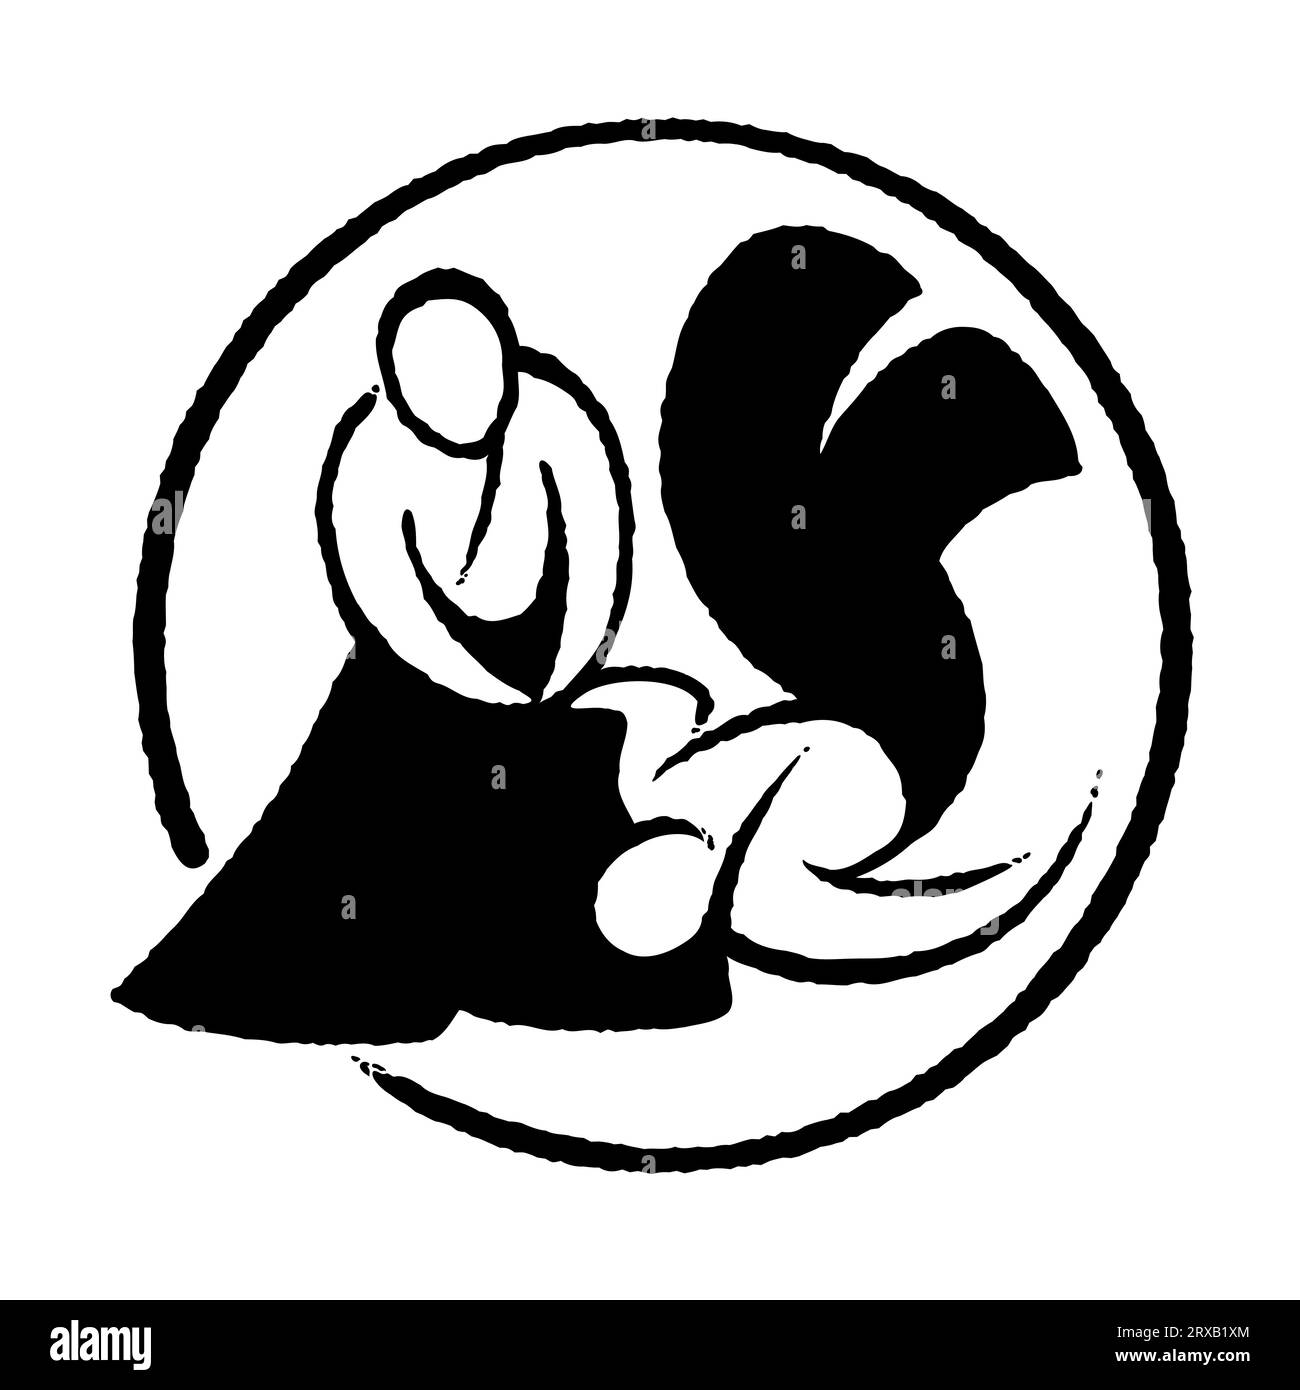 Logo à l'encre noire et blanche de l'Aïkido, coups de bruck dessinés à la main. Dessin simple de l'art martial japonais Illustration vectorielle. Illustration de Vecteur